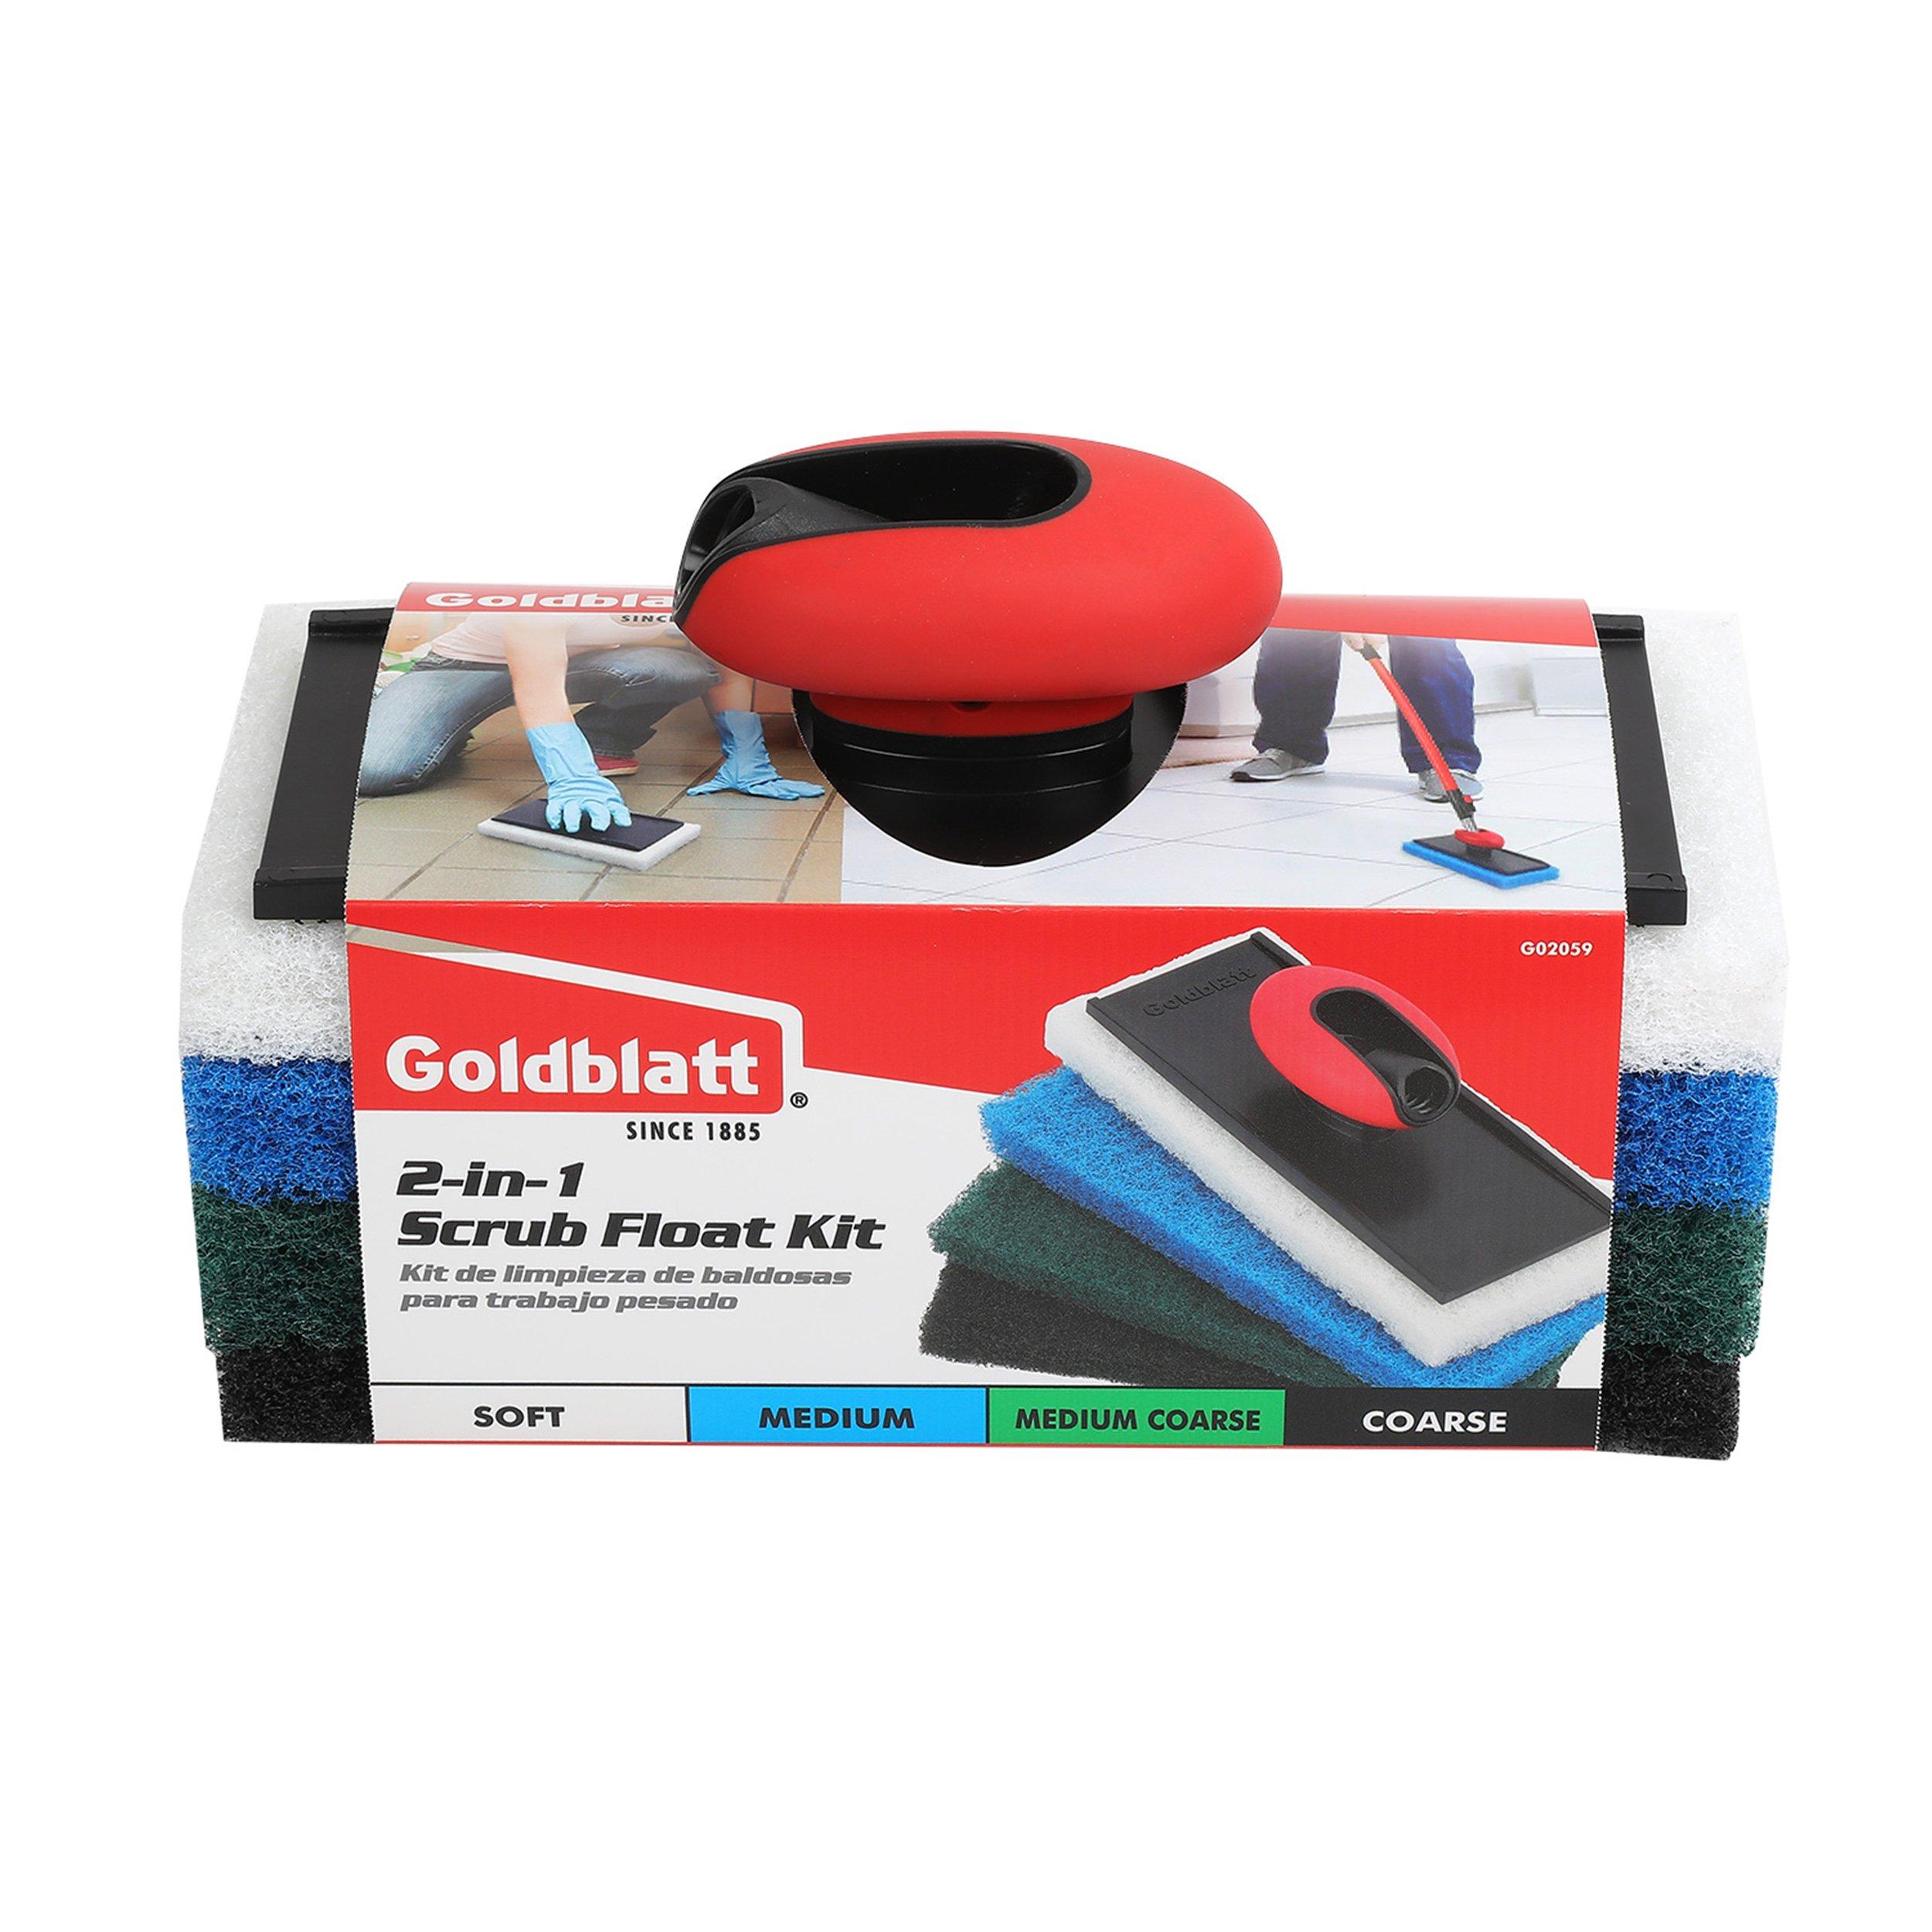 Goldblatt 2-in-1 Scrub Float Kit